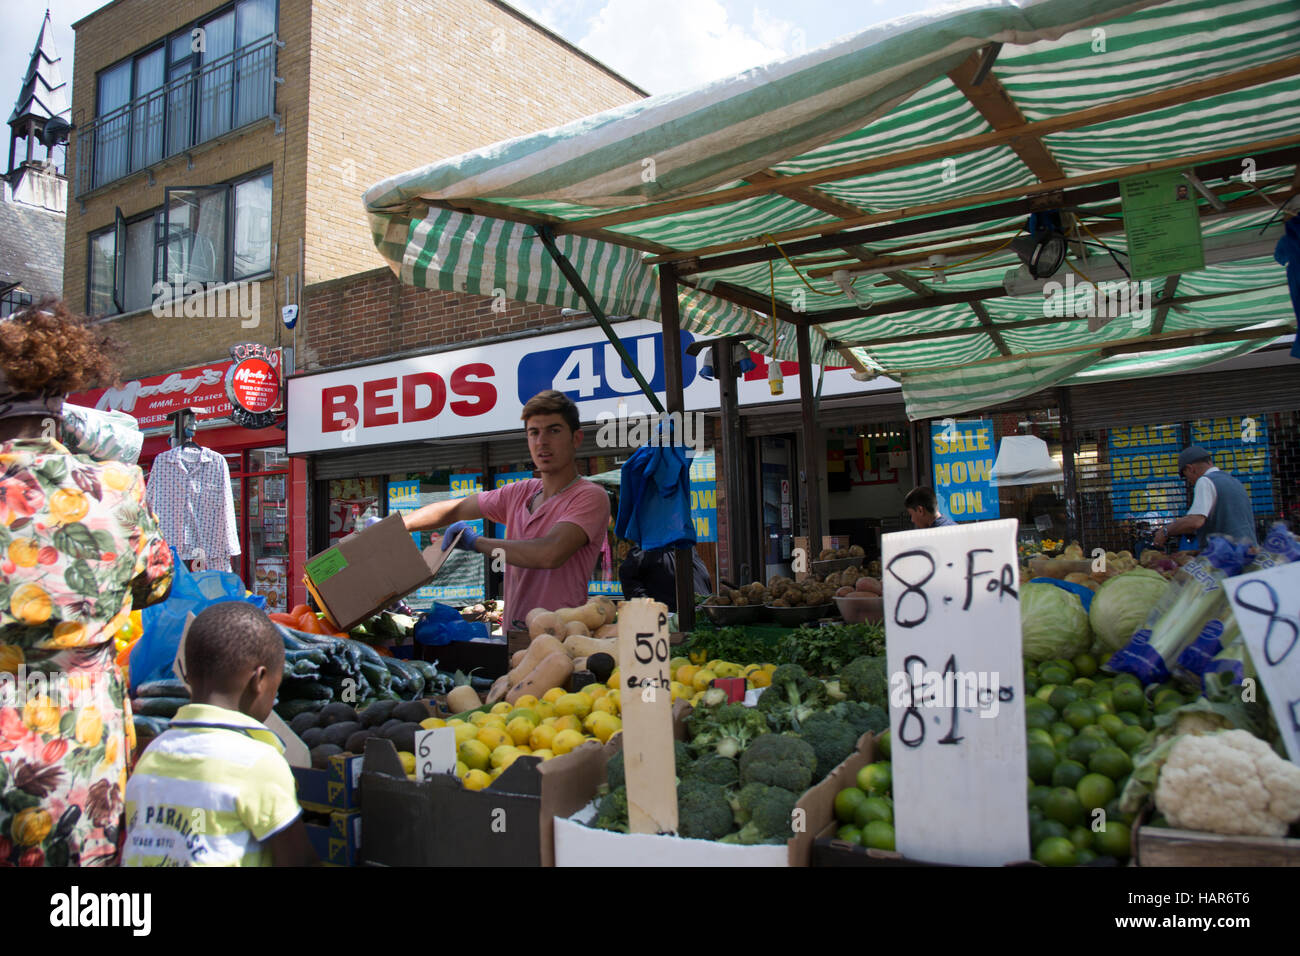 East Street Market dans Southwark London SE17. Échoppe de marché la vente de fruits et légumes frais sur le marché local, alias le lane Banque D'Images